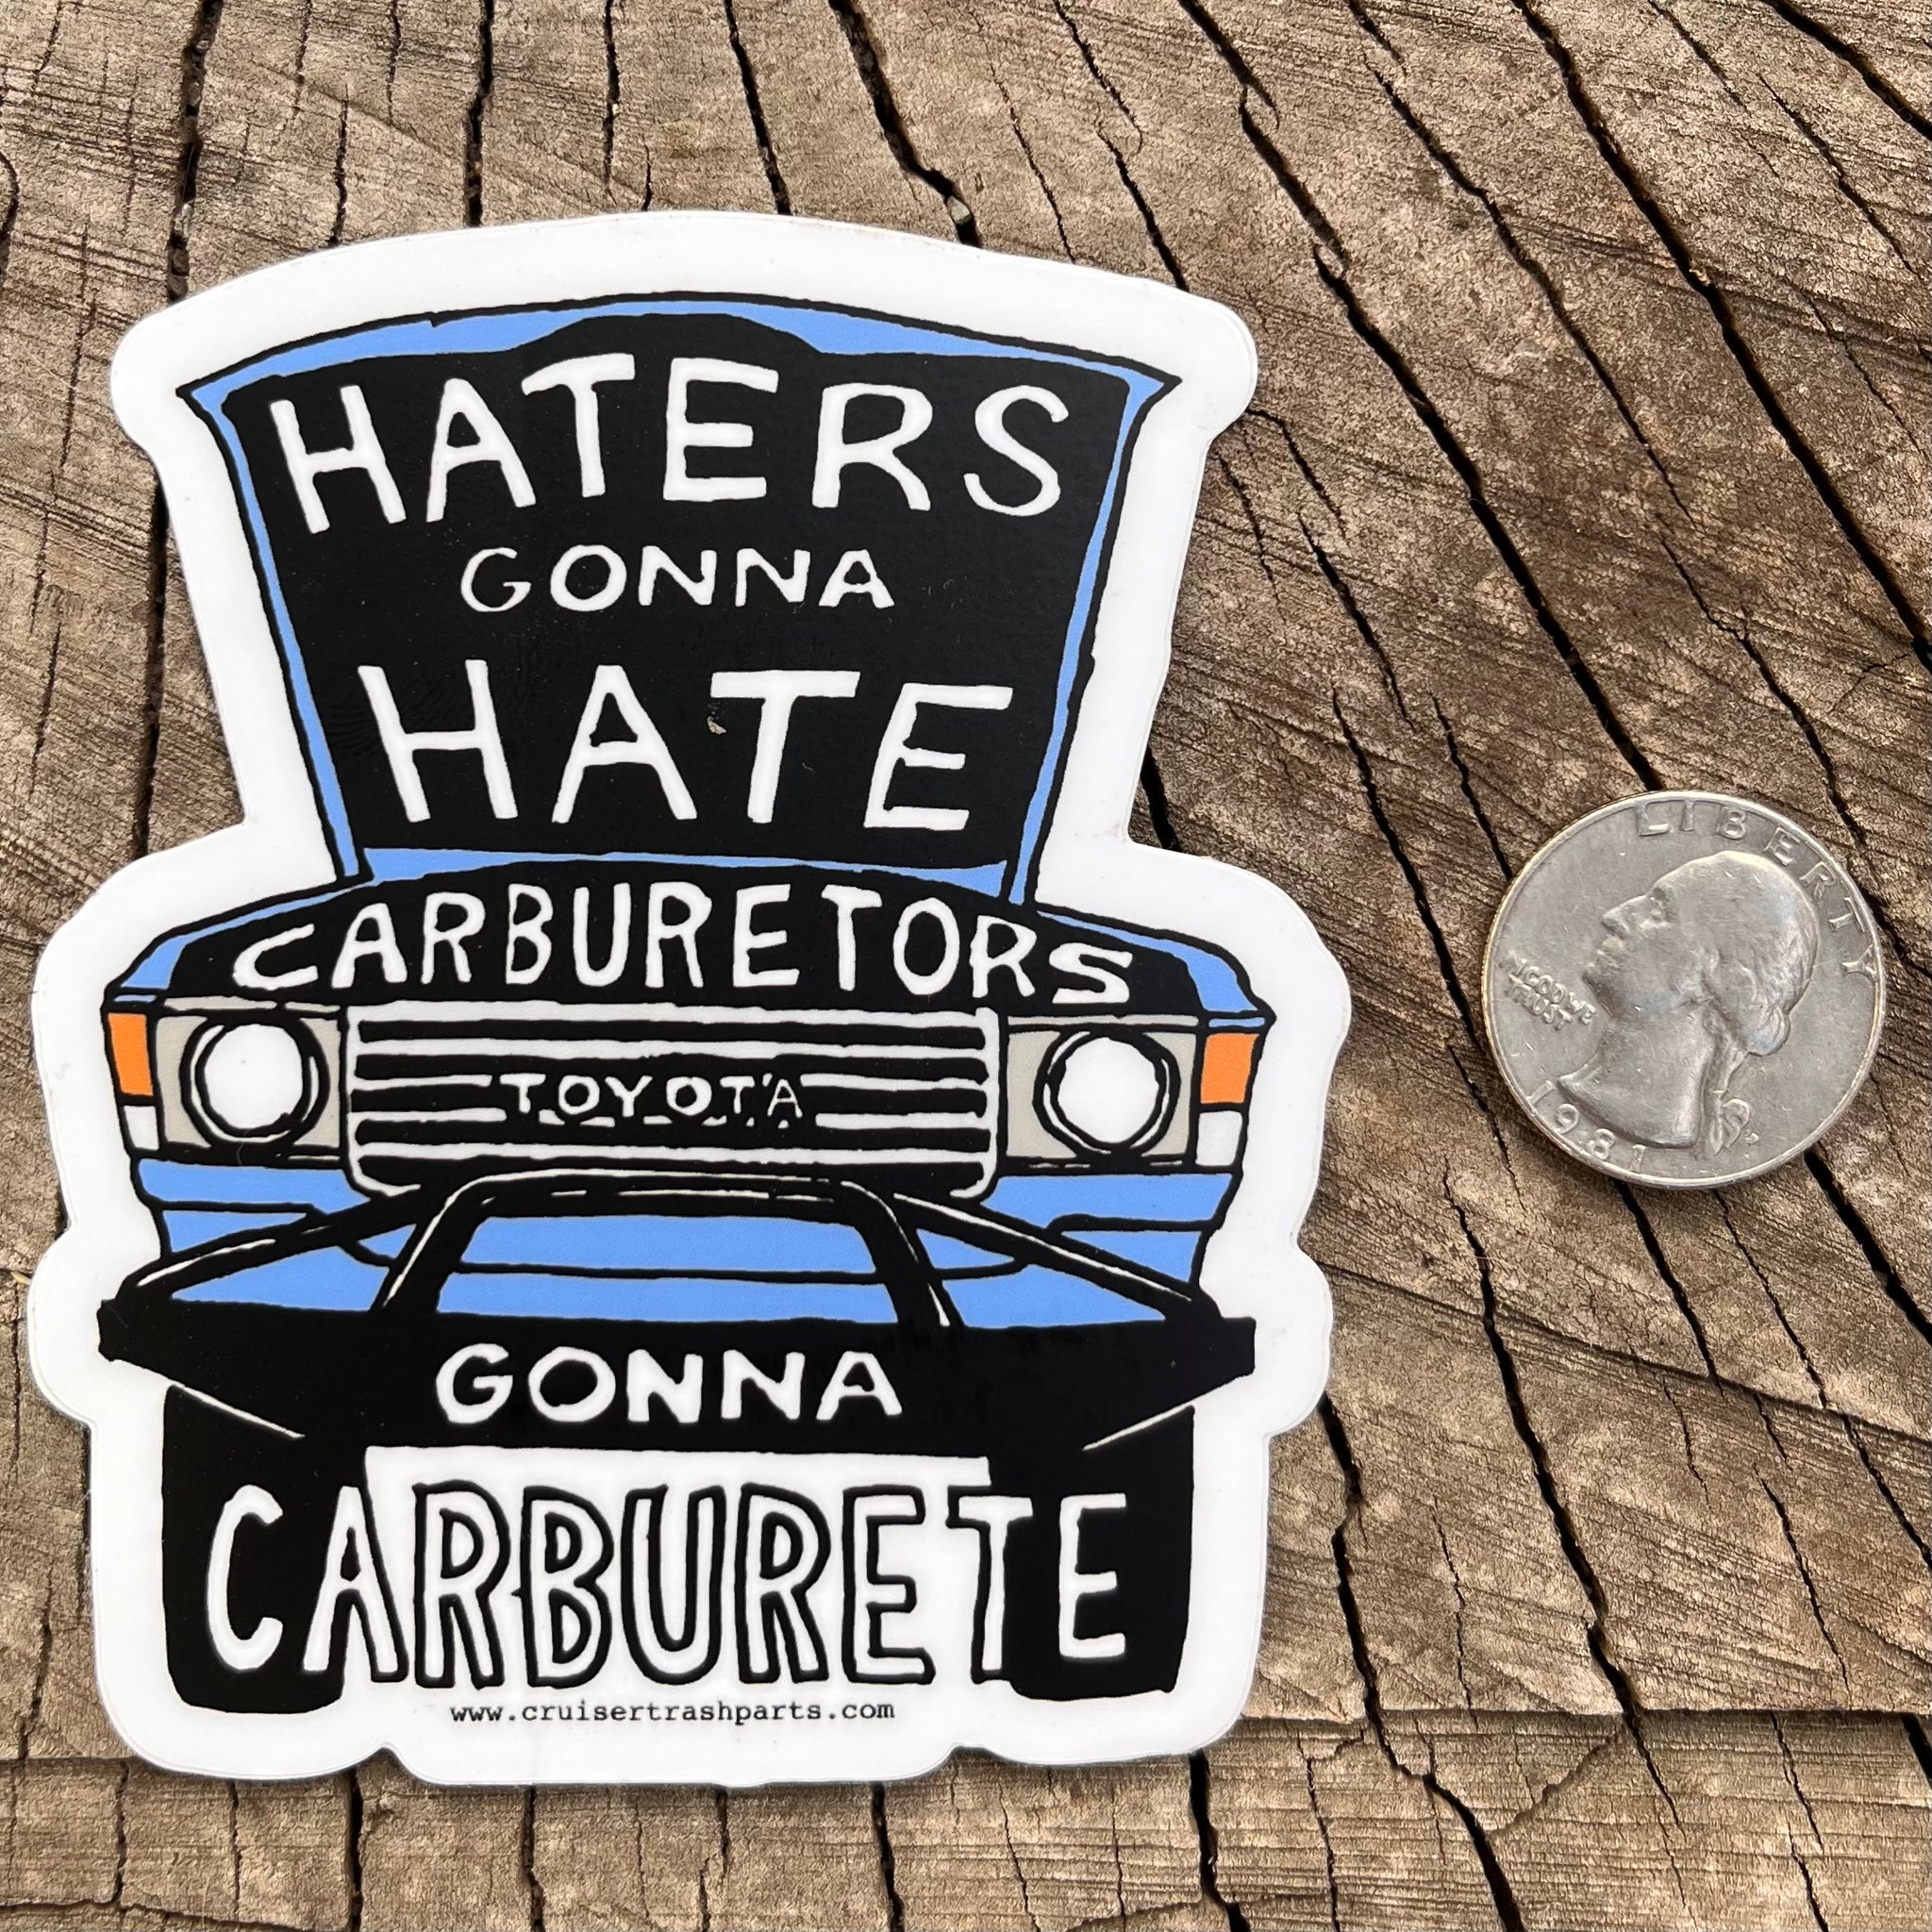 "Haters Gonna Hate" FJ60 Carburetor Sticker